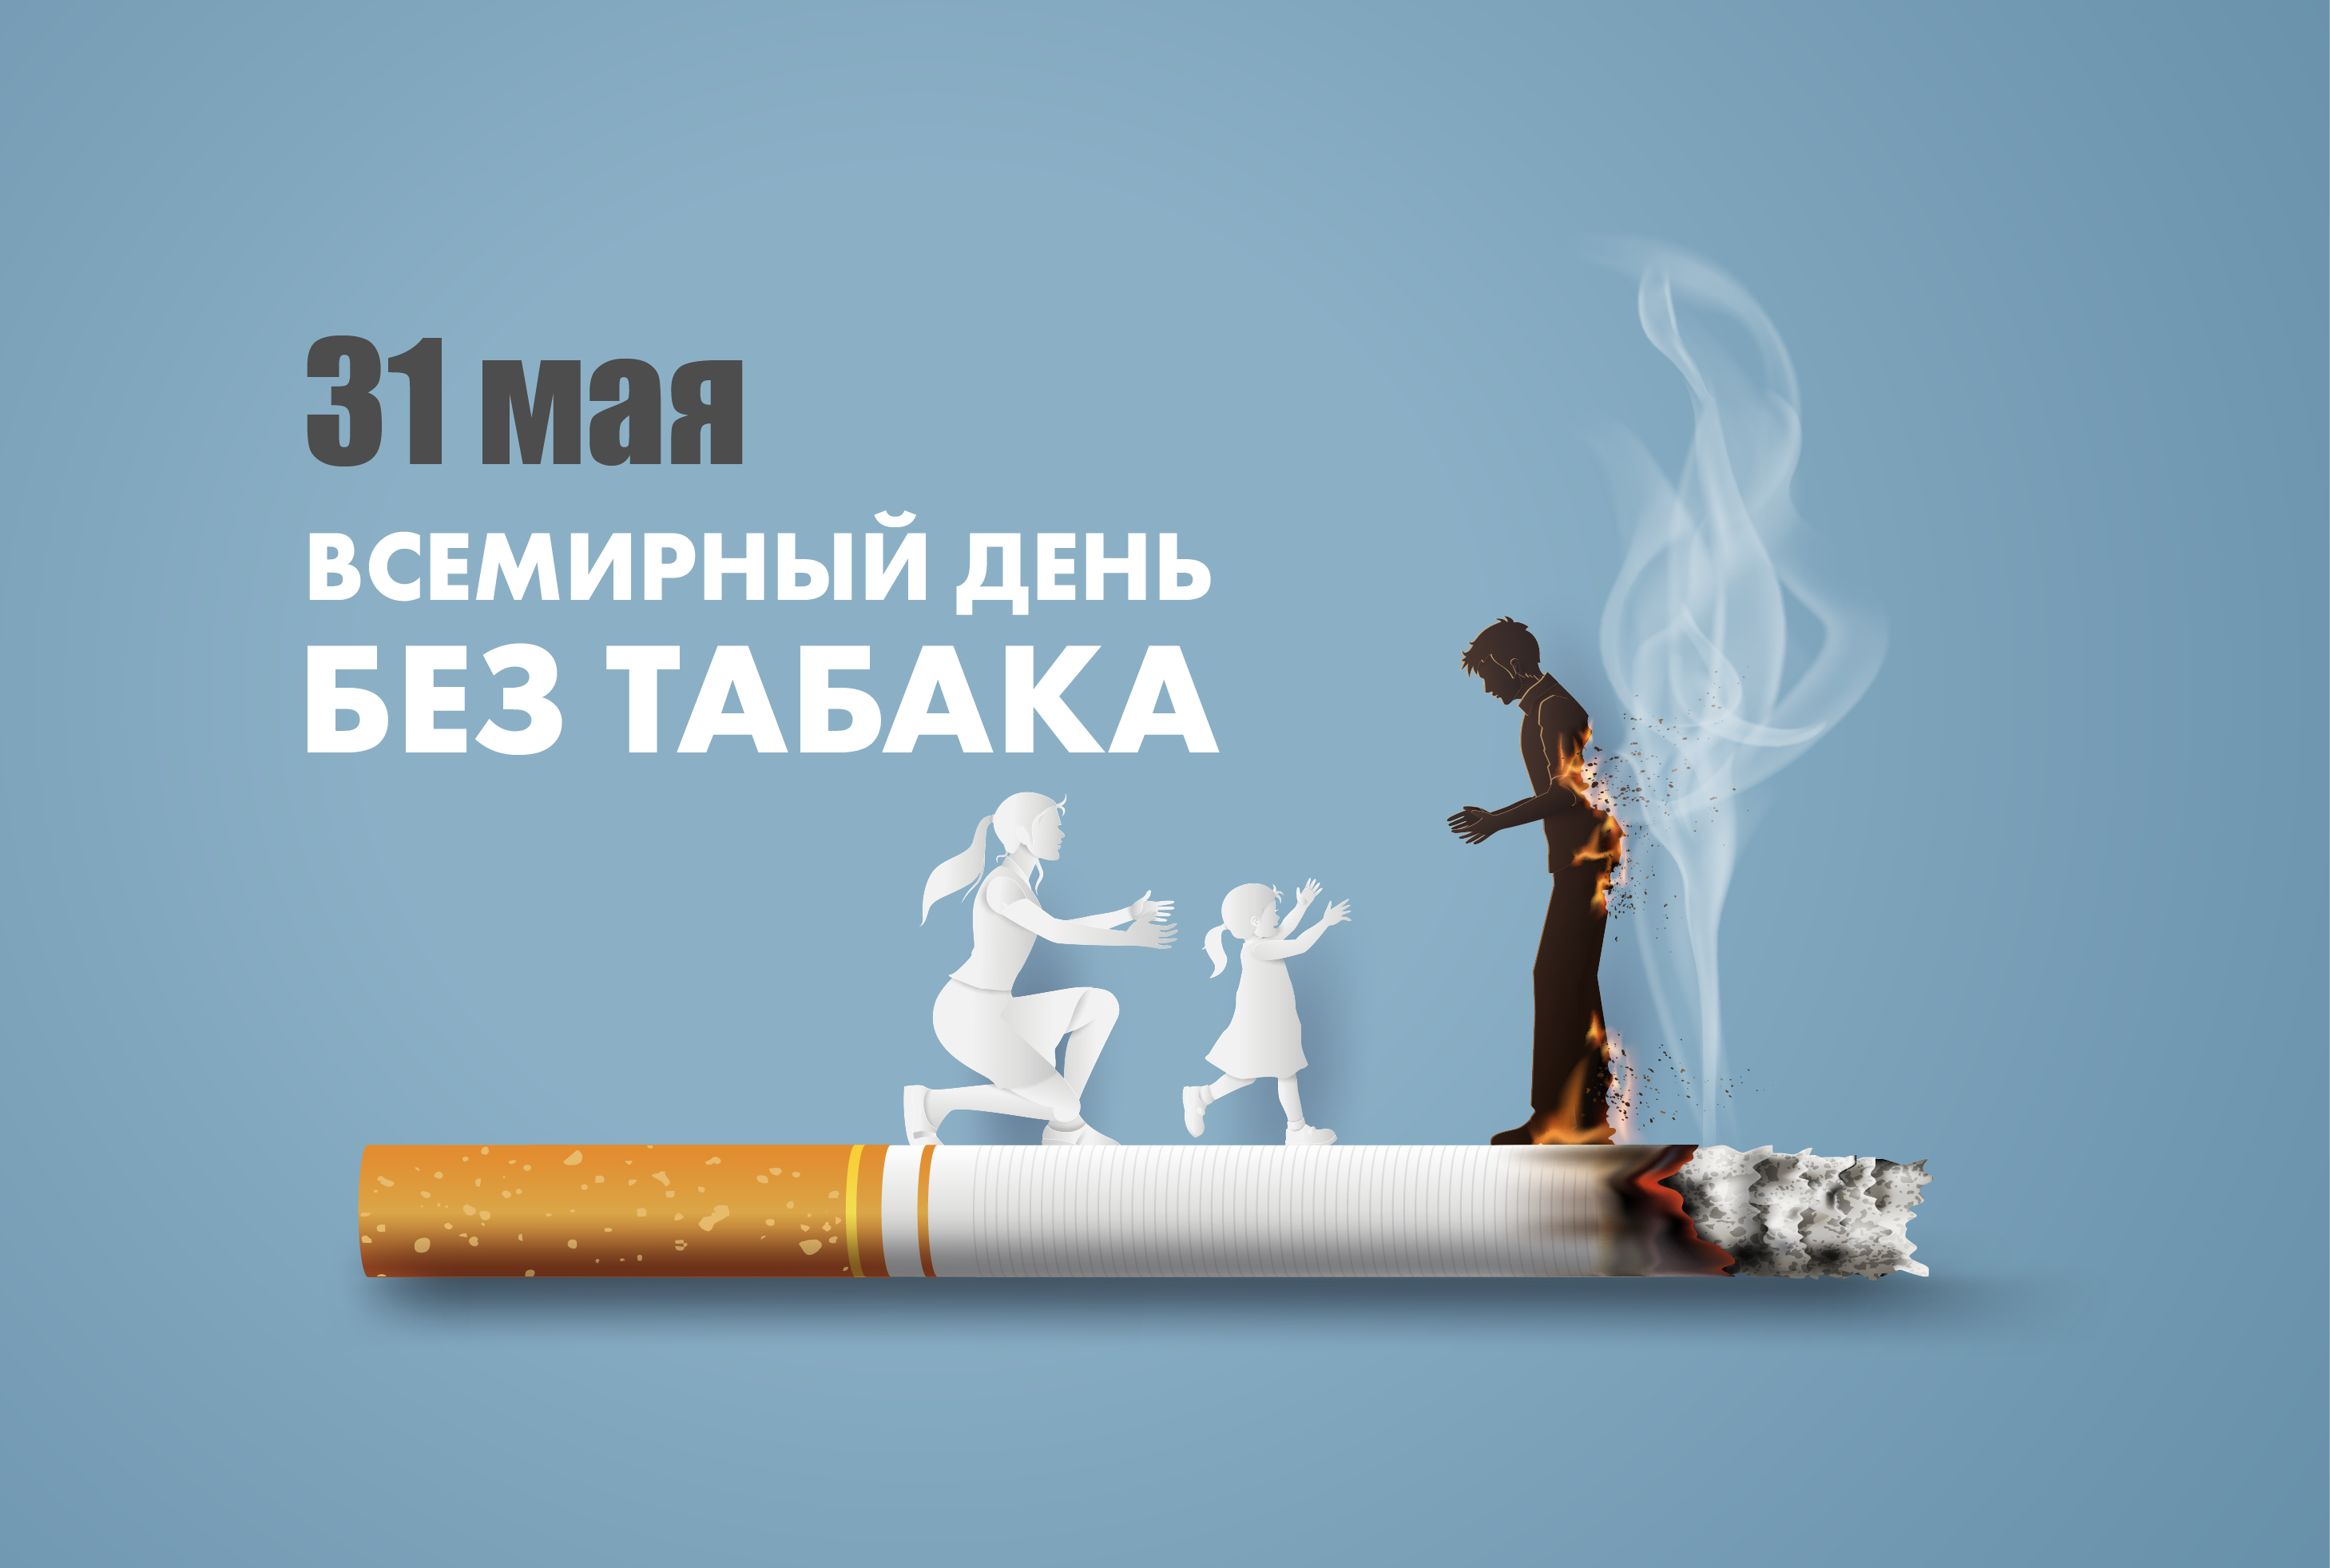 Антитабачная выставка пройдет в 10 городах Казахстана с 31 мая – Всемирный день без табака